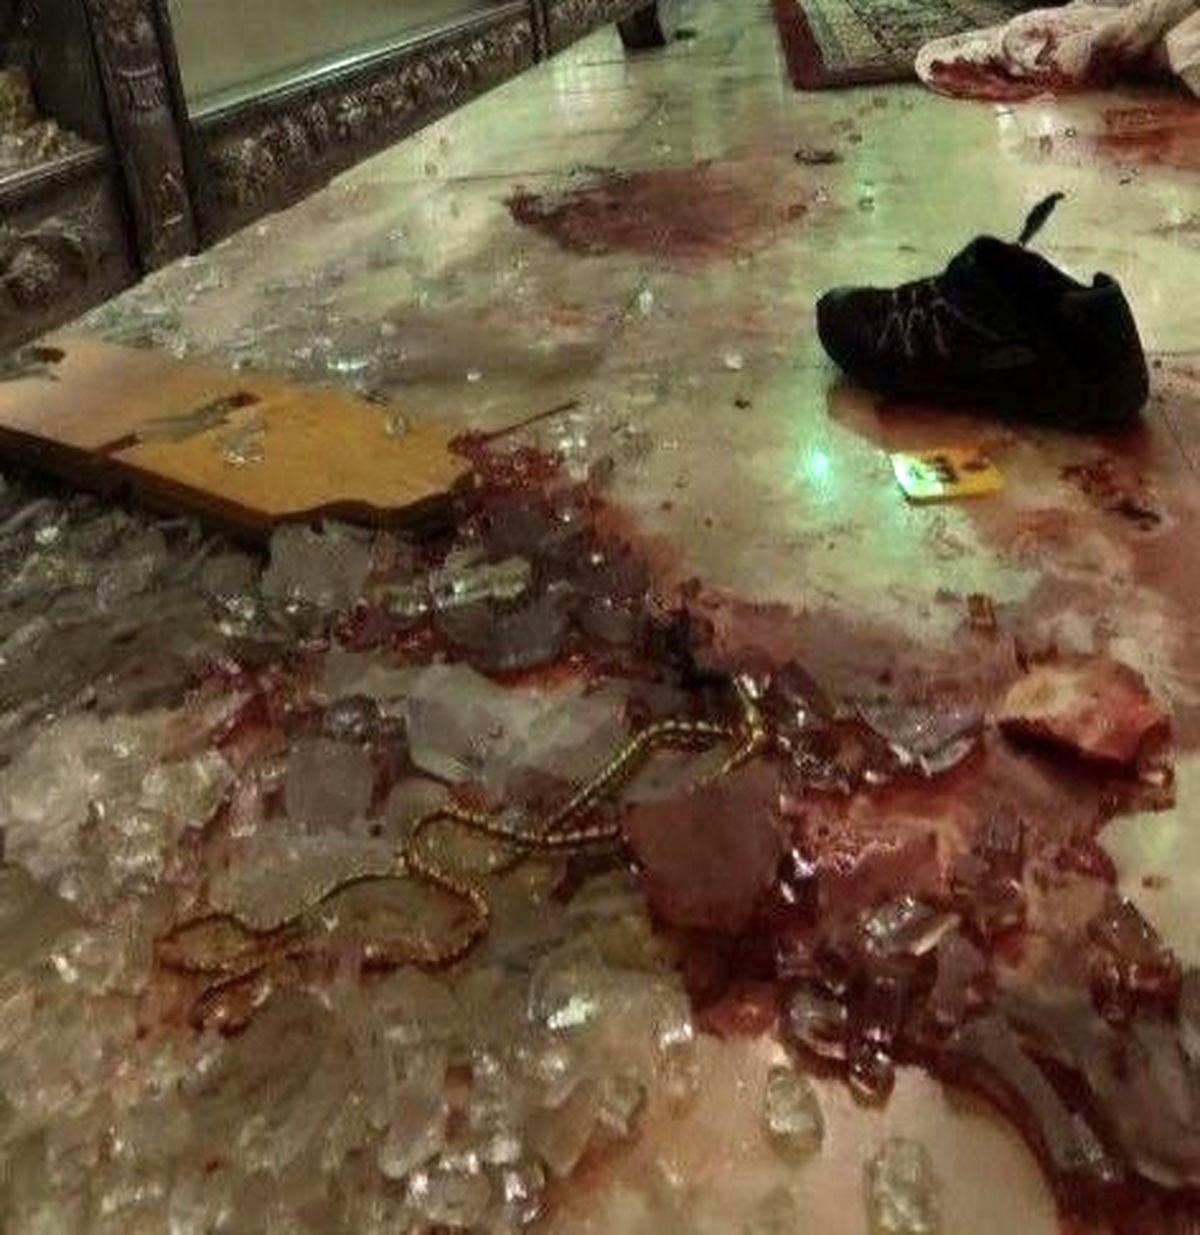 عامل حمله تروریستی شیراز در حال بازجویی است